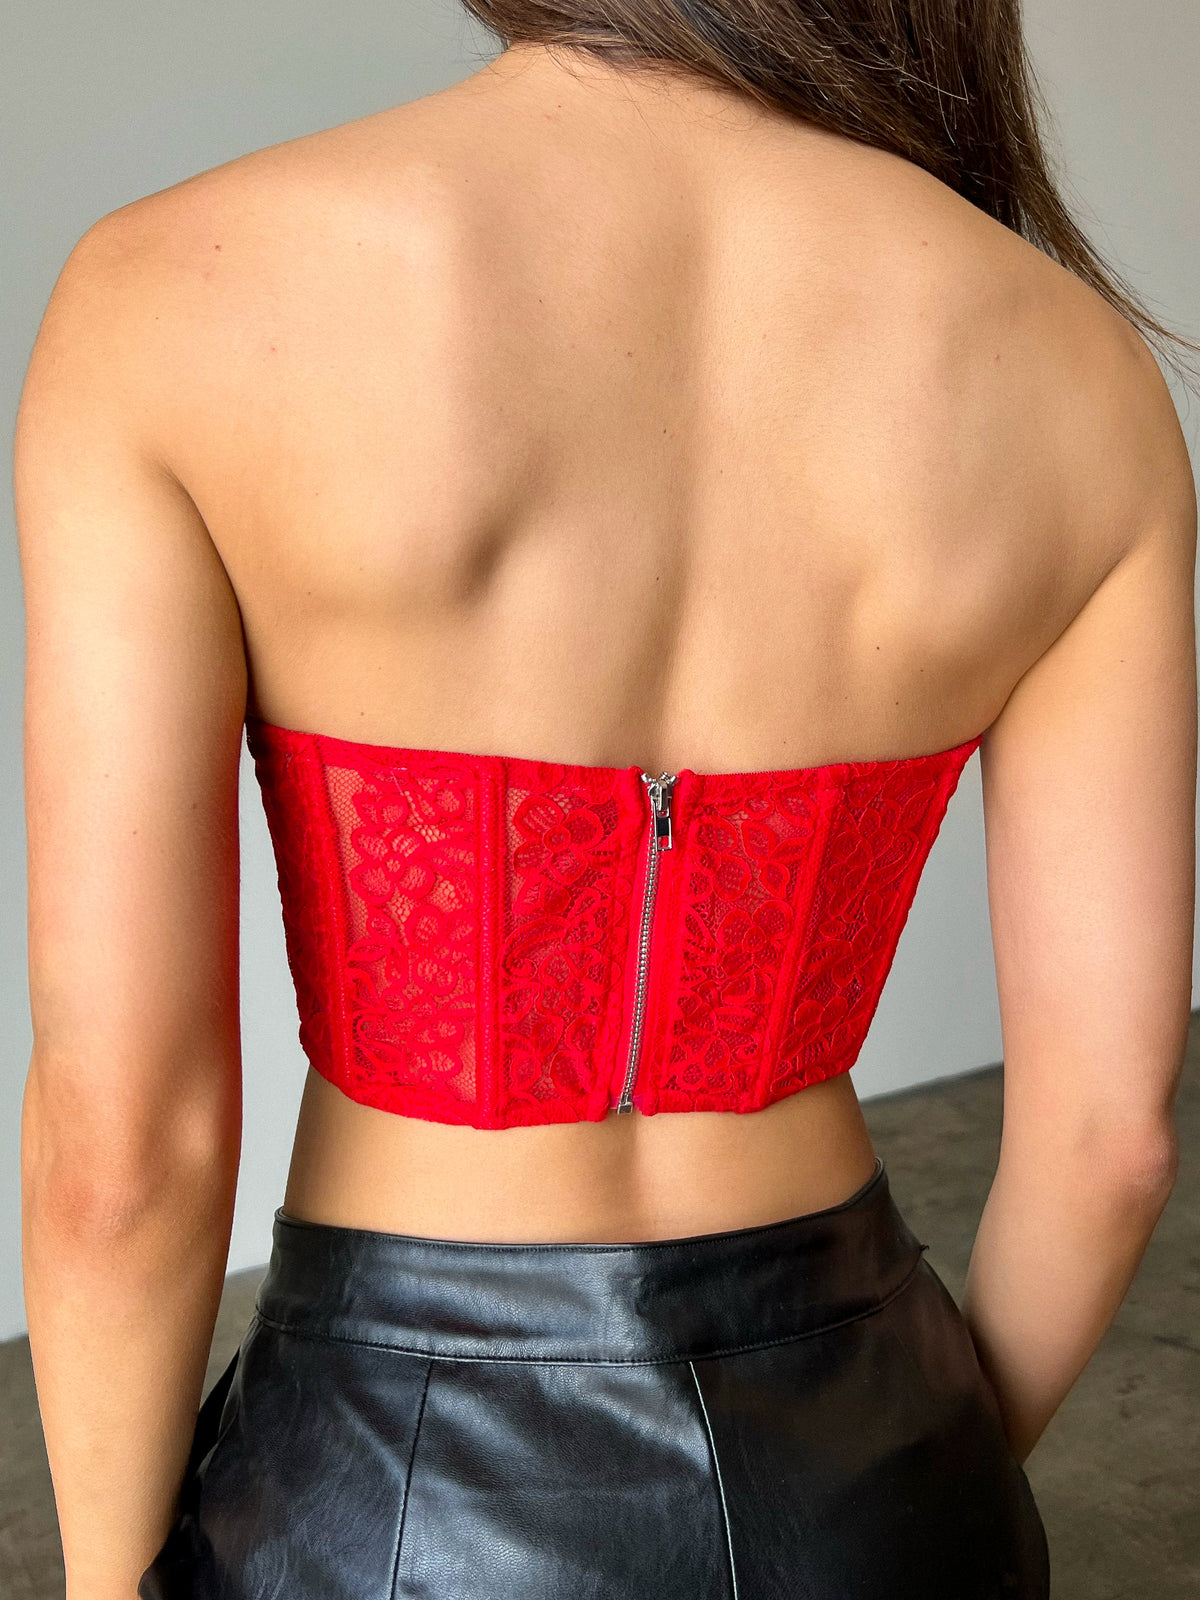 Zara red lace corset bra 32b size  Corset bra, Lace corset, Red lace